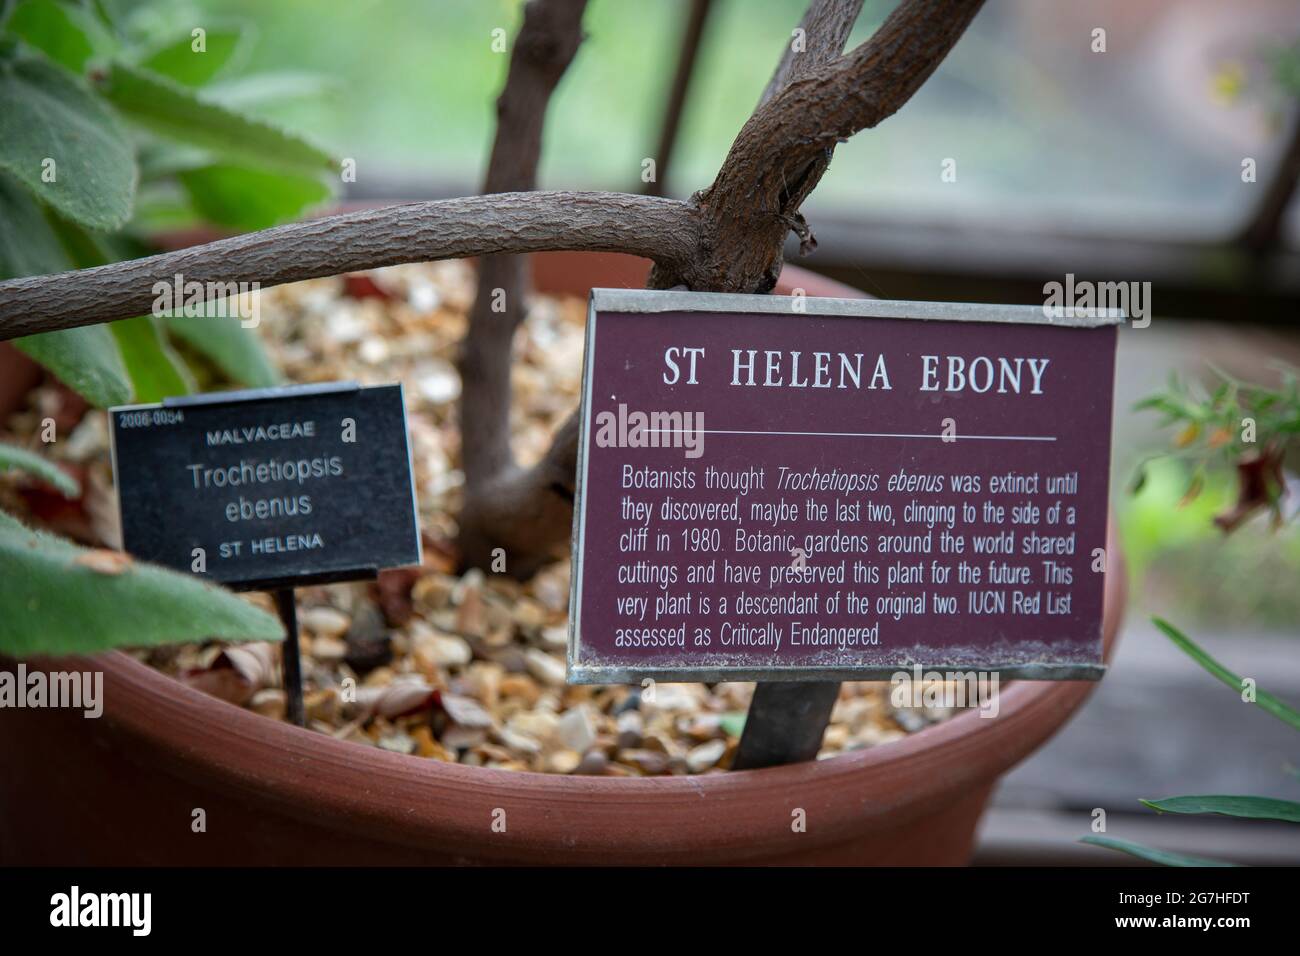 St. Helena Ebony (Trochetiopsis ebenus) galt als ausgestorben, bis die letzten beiden 1980 an einer Klippe festgeklammert entdeckt wurden. Stockfoto